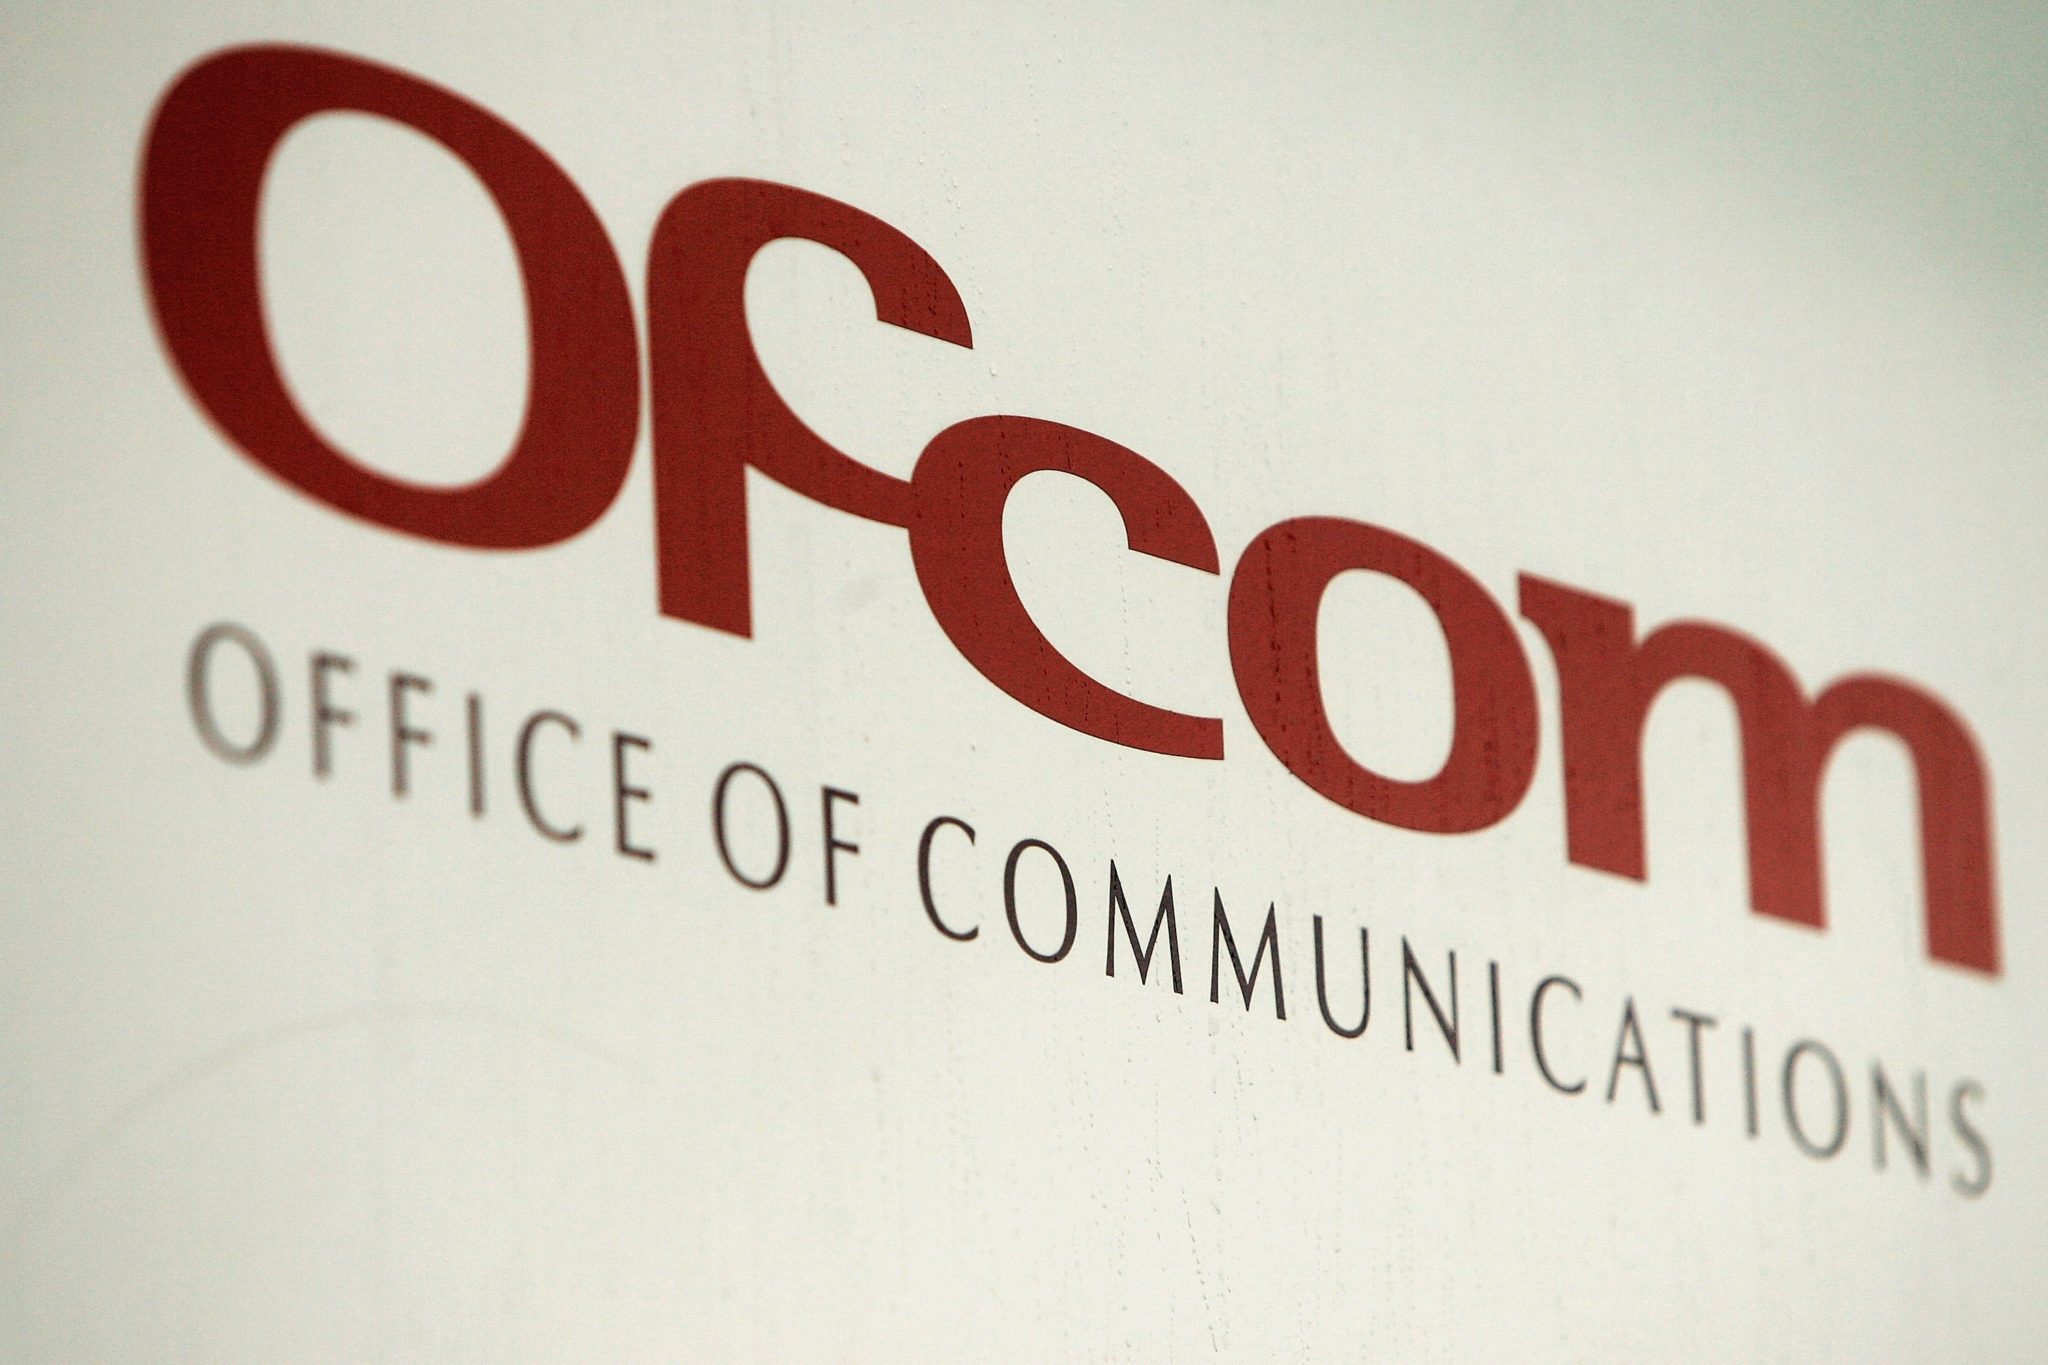 The Ofcom logo